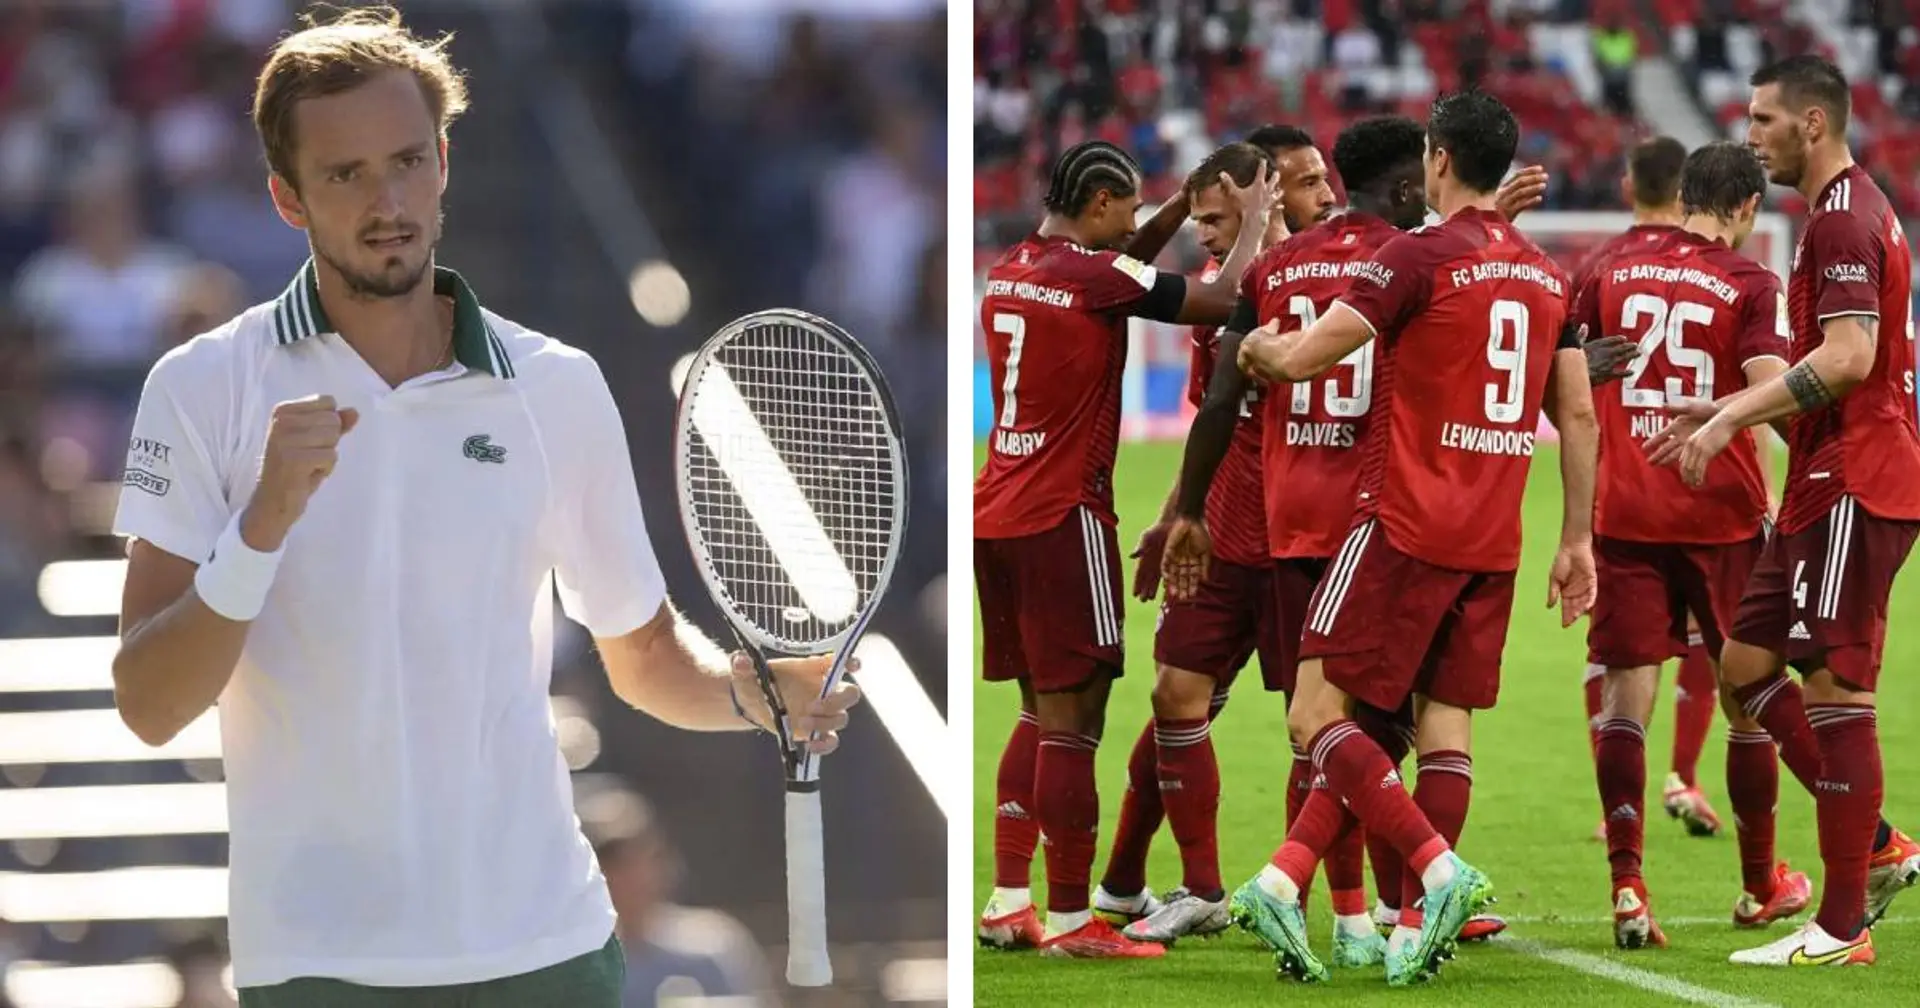 "Das ist jetzt meine Mannschaft": Tennisstar Medvedev erzählt die Geschichte seiner Liebe zum FC Bayern